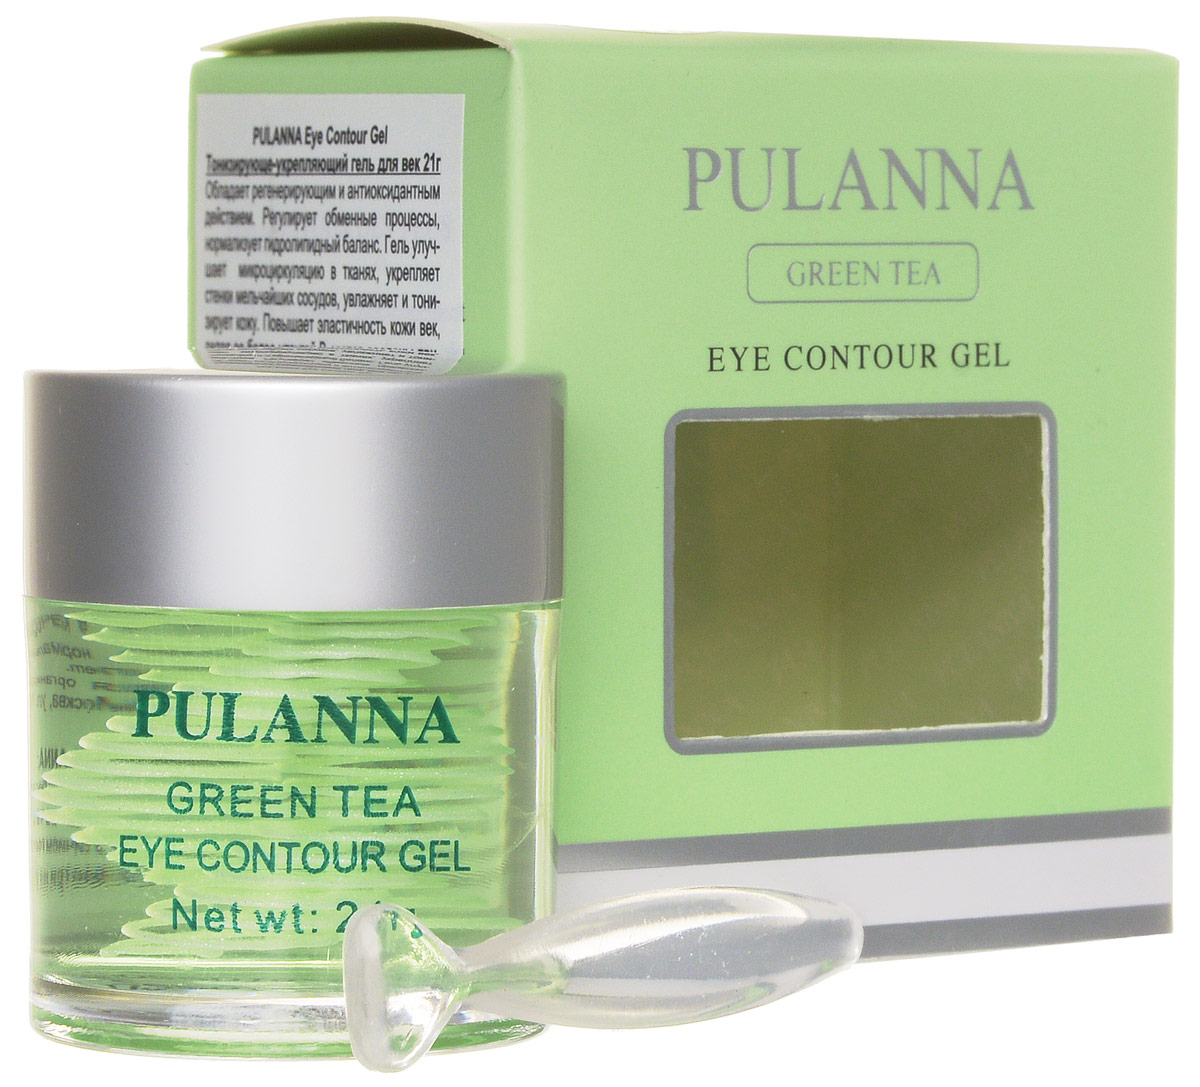 Pulanna Тонизирующе-укрепляющий гель для век на основе зеленого чая - Eye Contour Gel 21 г